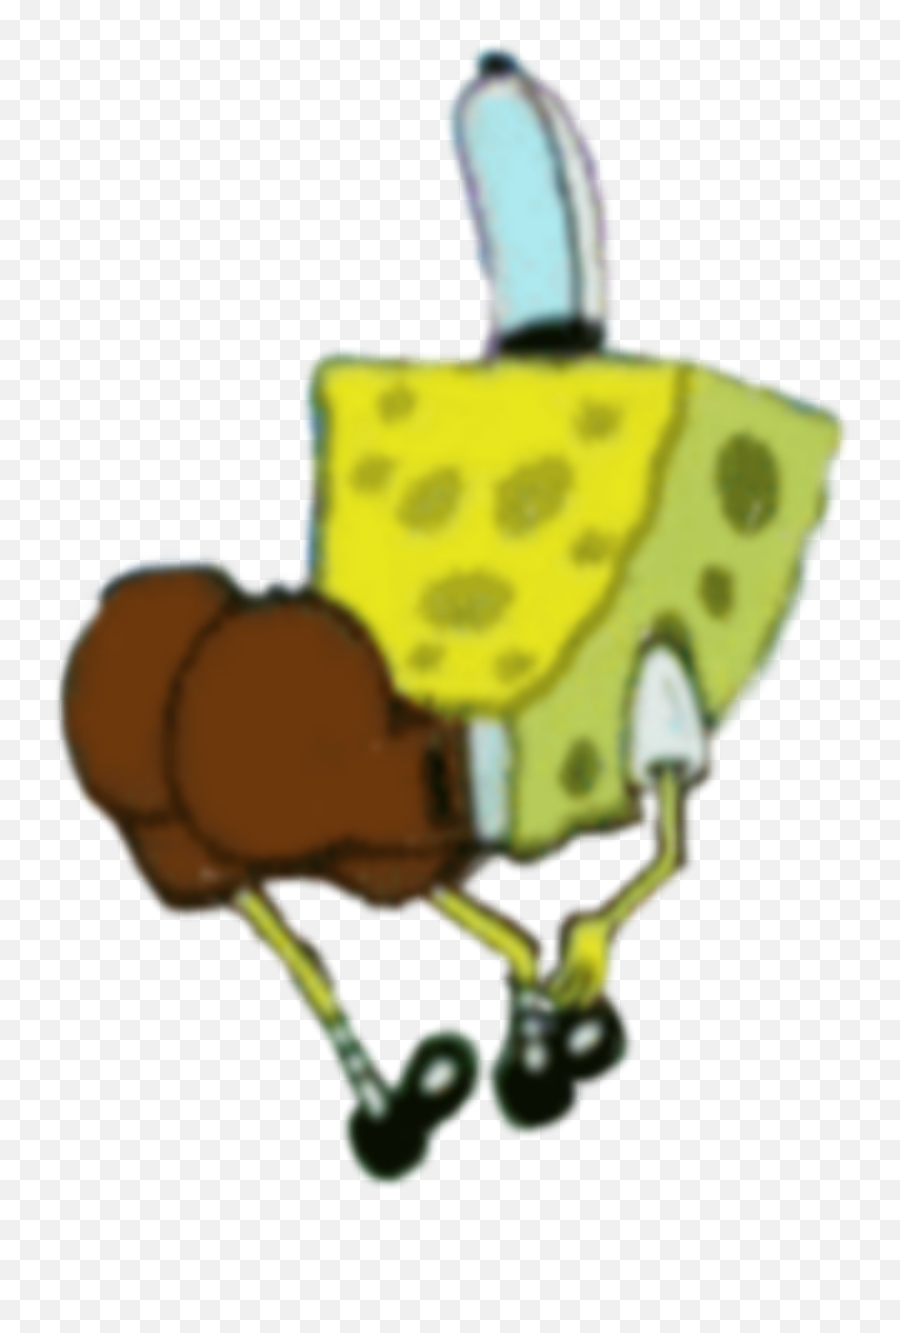 Spongebob Sticker By Winnie - Thepoohandcaillou Caillou As A Baddie Emoji,Spongebob Emojis